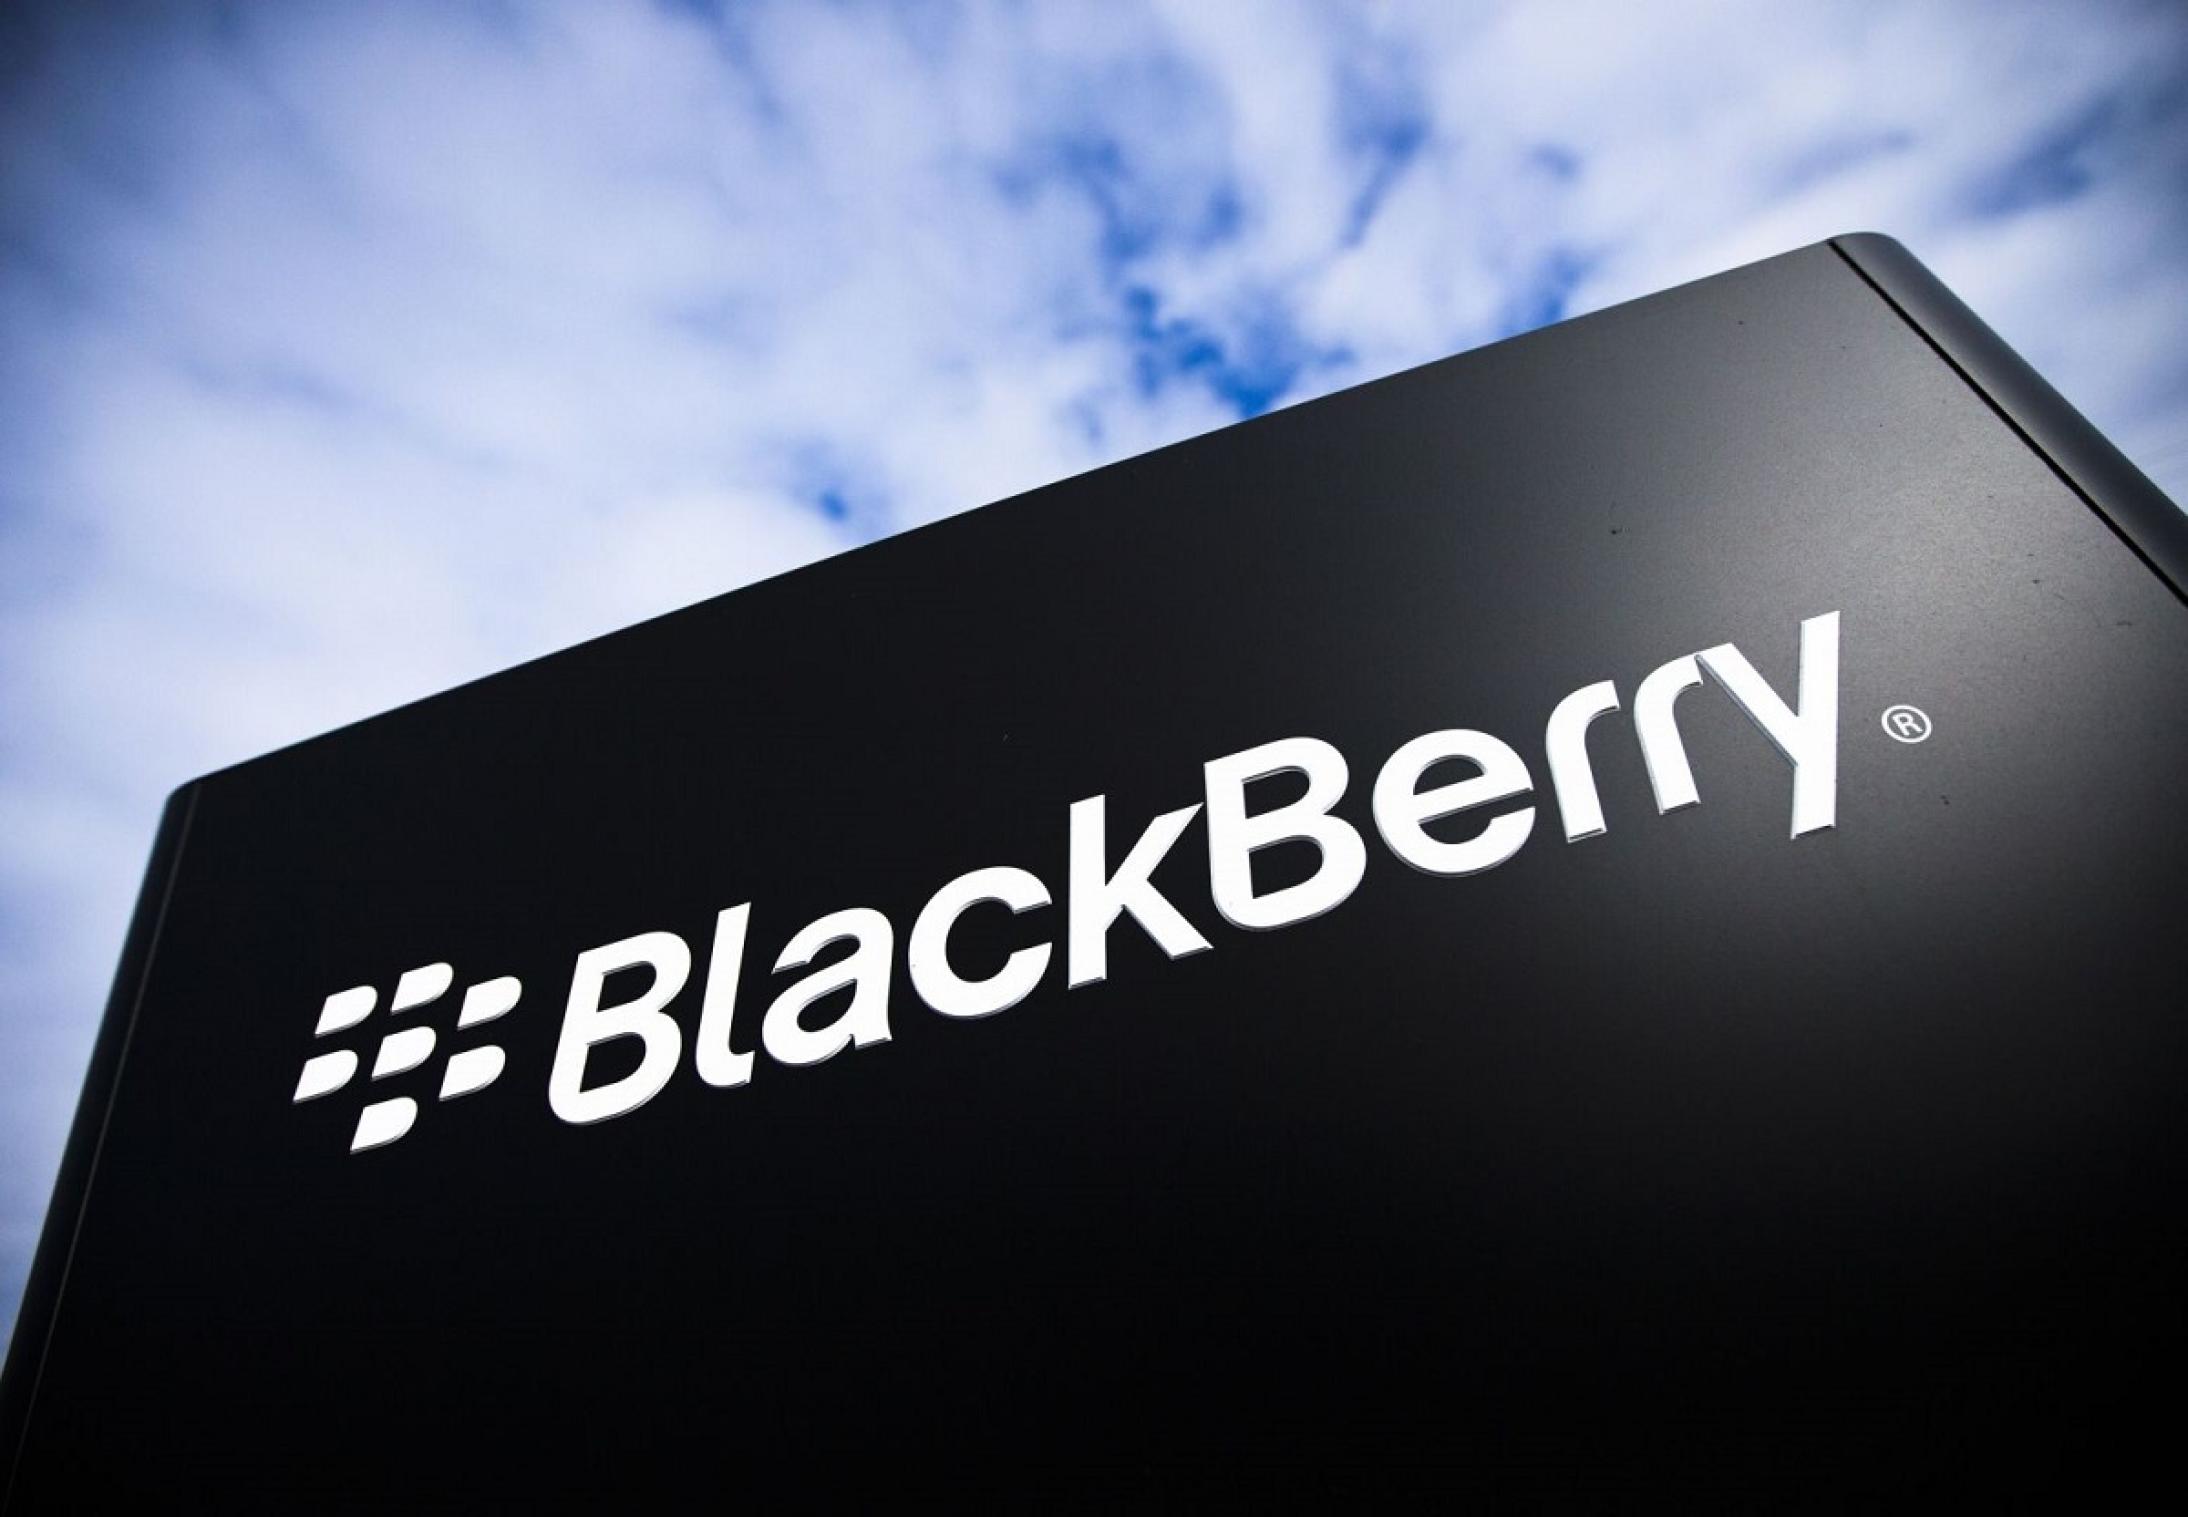 امنیت اینترنت اشیا با تکنولوژی جدید Blackberry